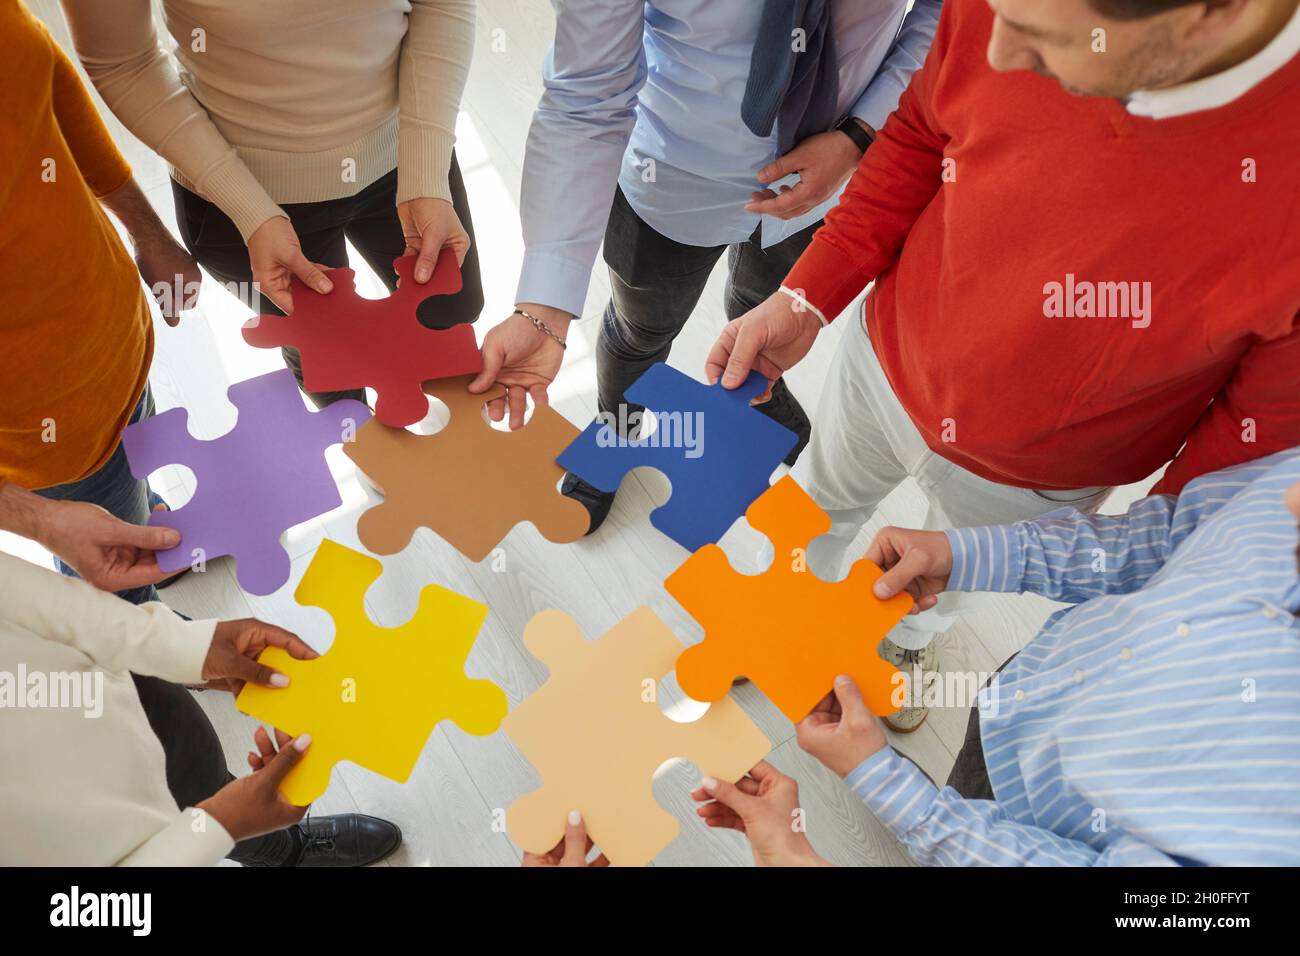 Une équipe d'hommes et de femmes d'affaires se joint à des pièces de puzzle colorées pour montrer le concept du travail d'équipe Banque D'Images